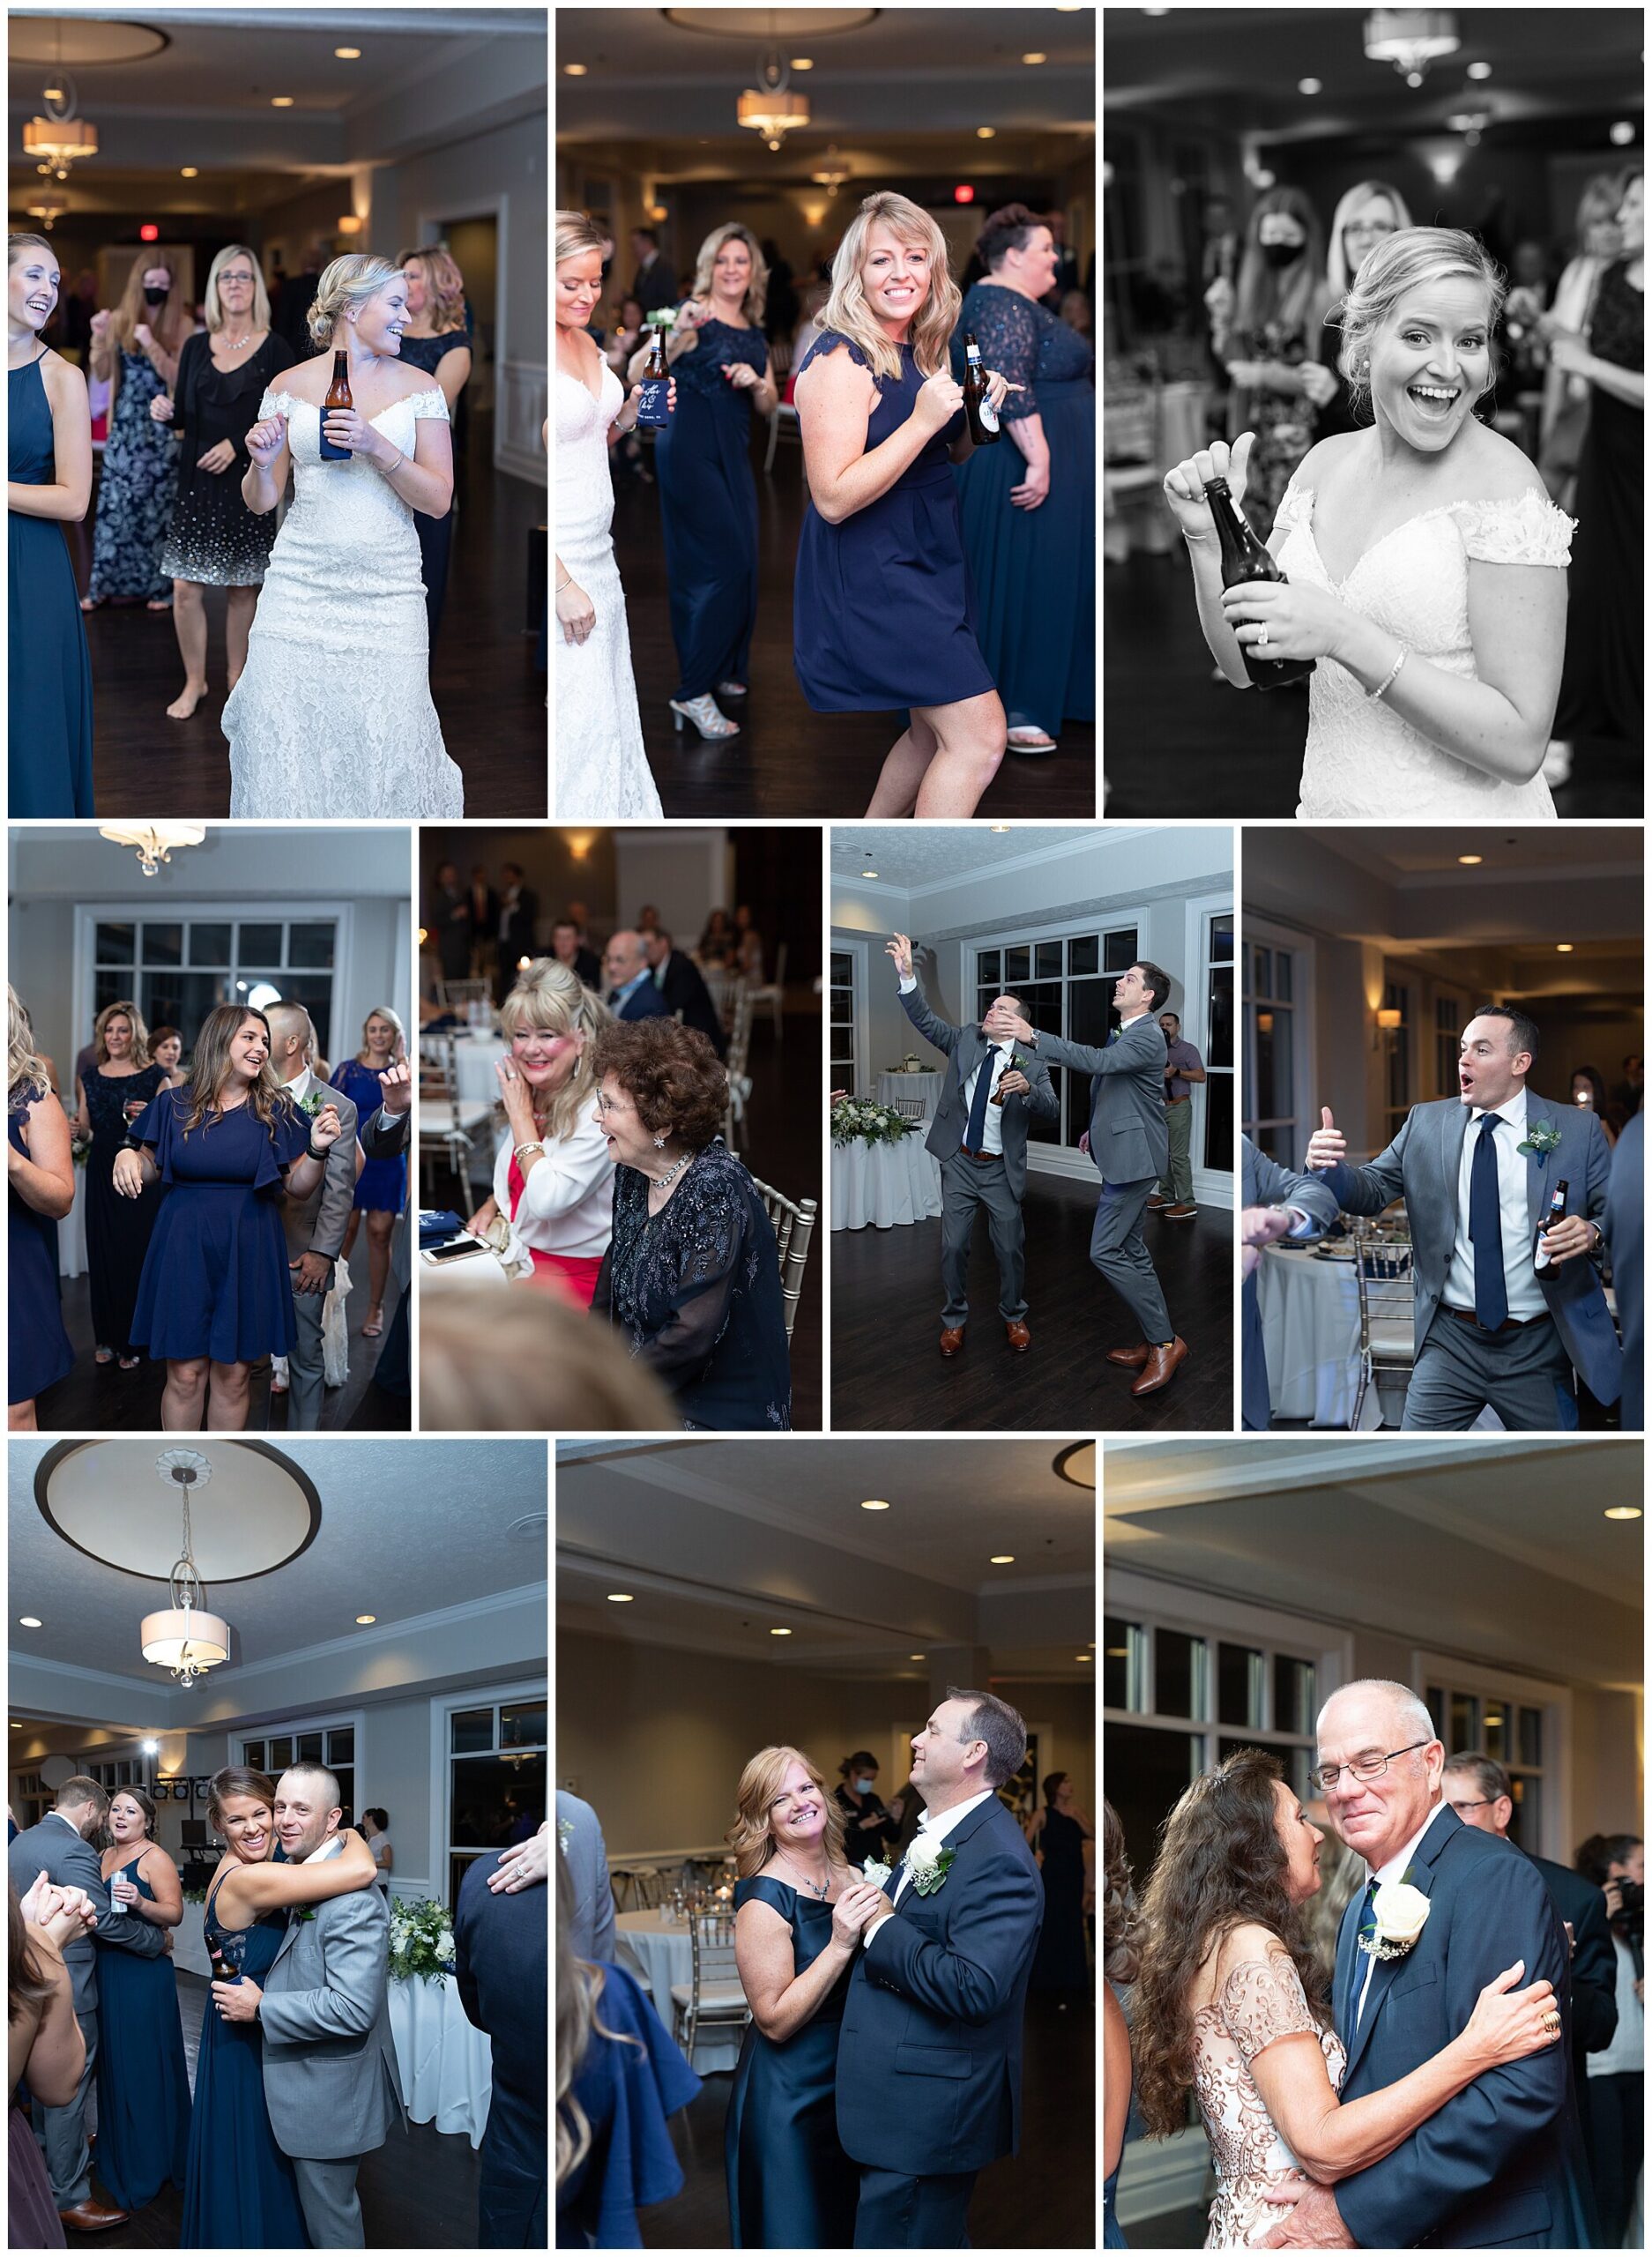 Newport News VA wedding reception dances